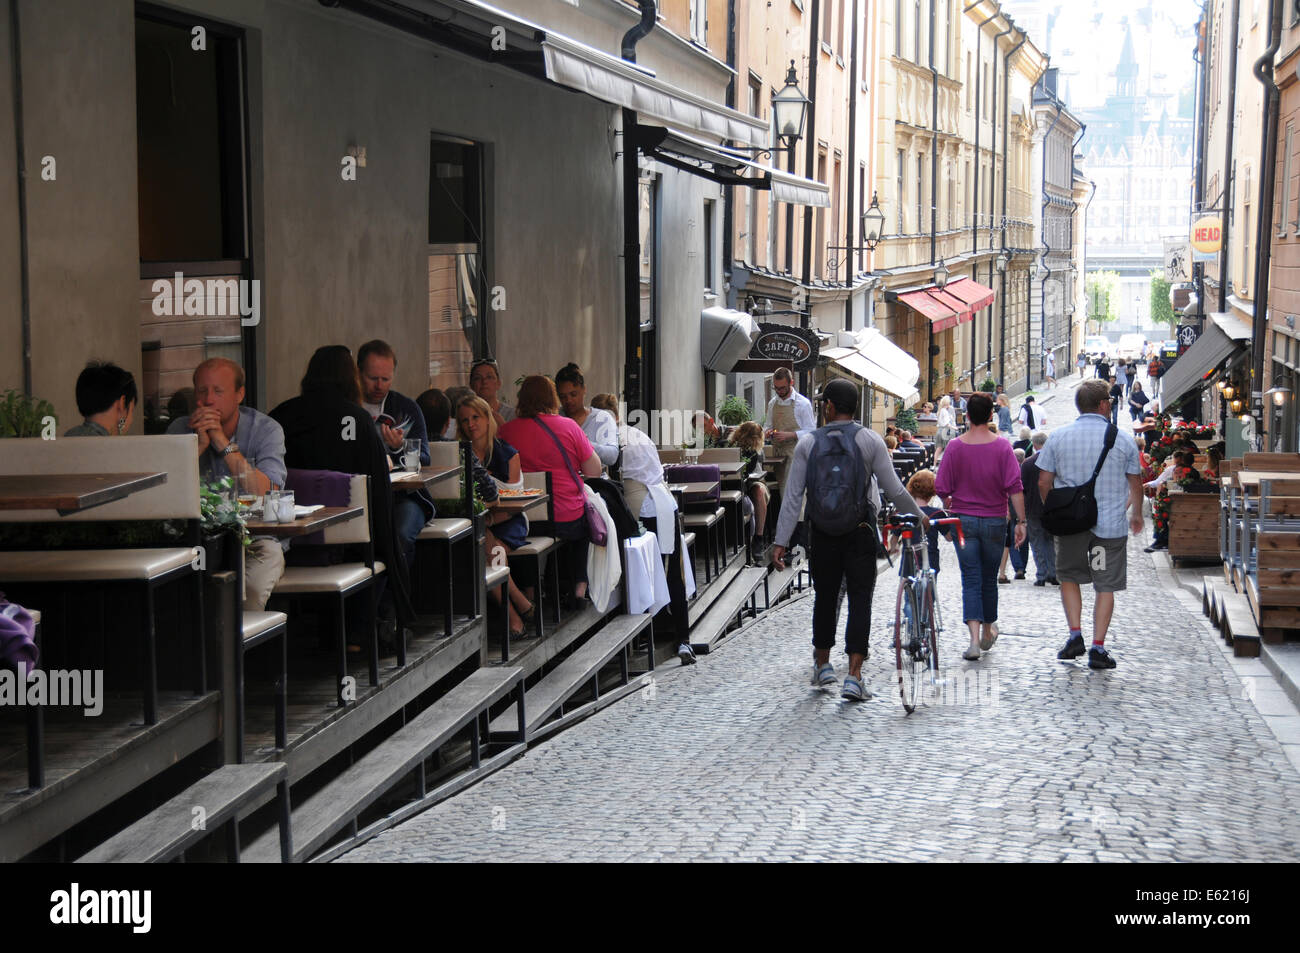 Leben auf der Straße im alten Stockholm mit Bürgersteig Restaurants, Coffee-Shops, Fußgänger und Musikern entlang der gepflasterten Straßen Stockfoto